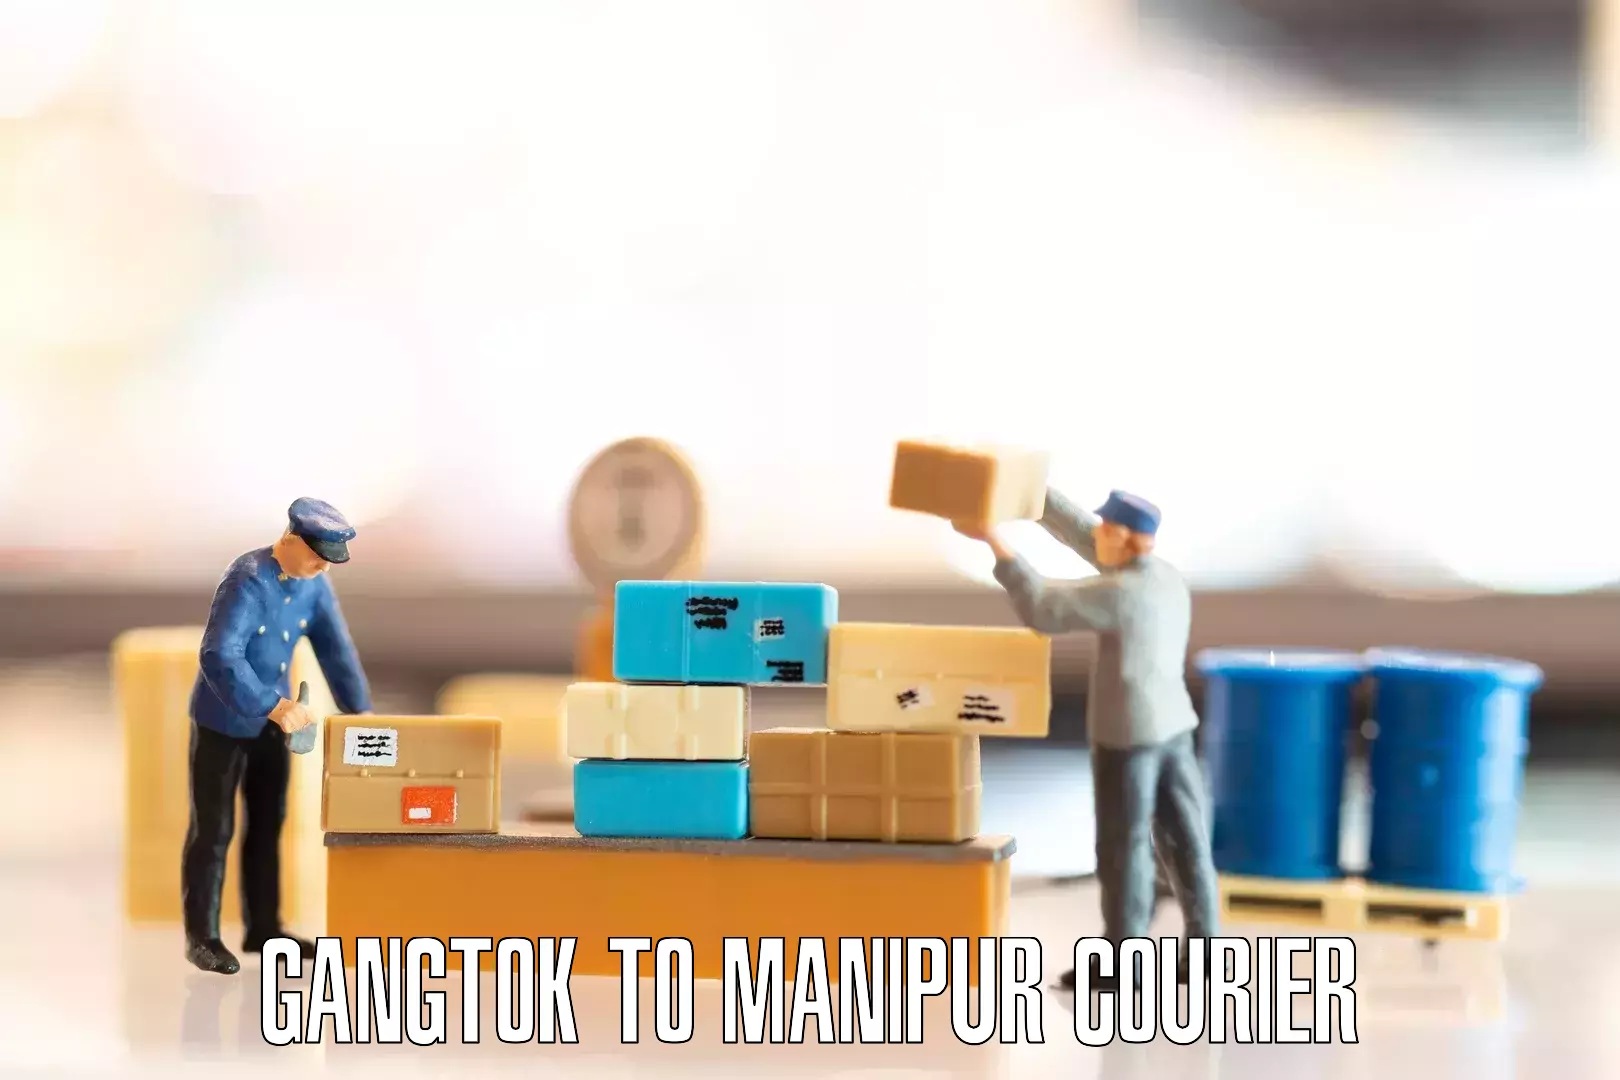 Furniture transport and logistics Gangtok to Tamenglong